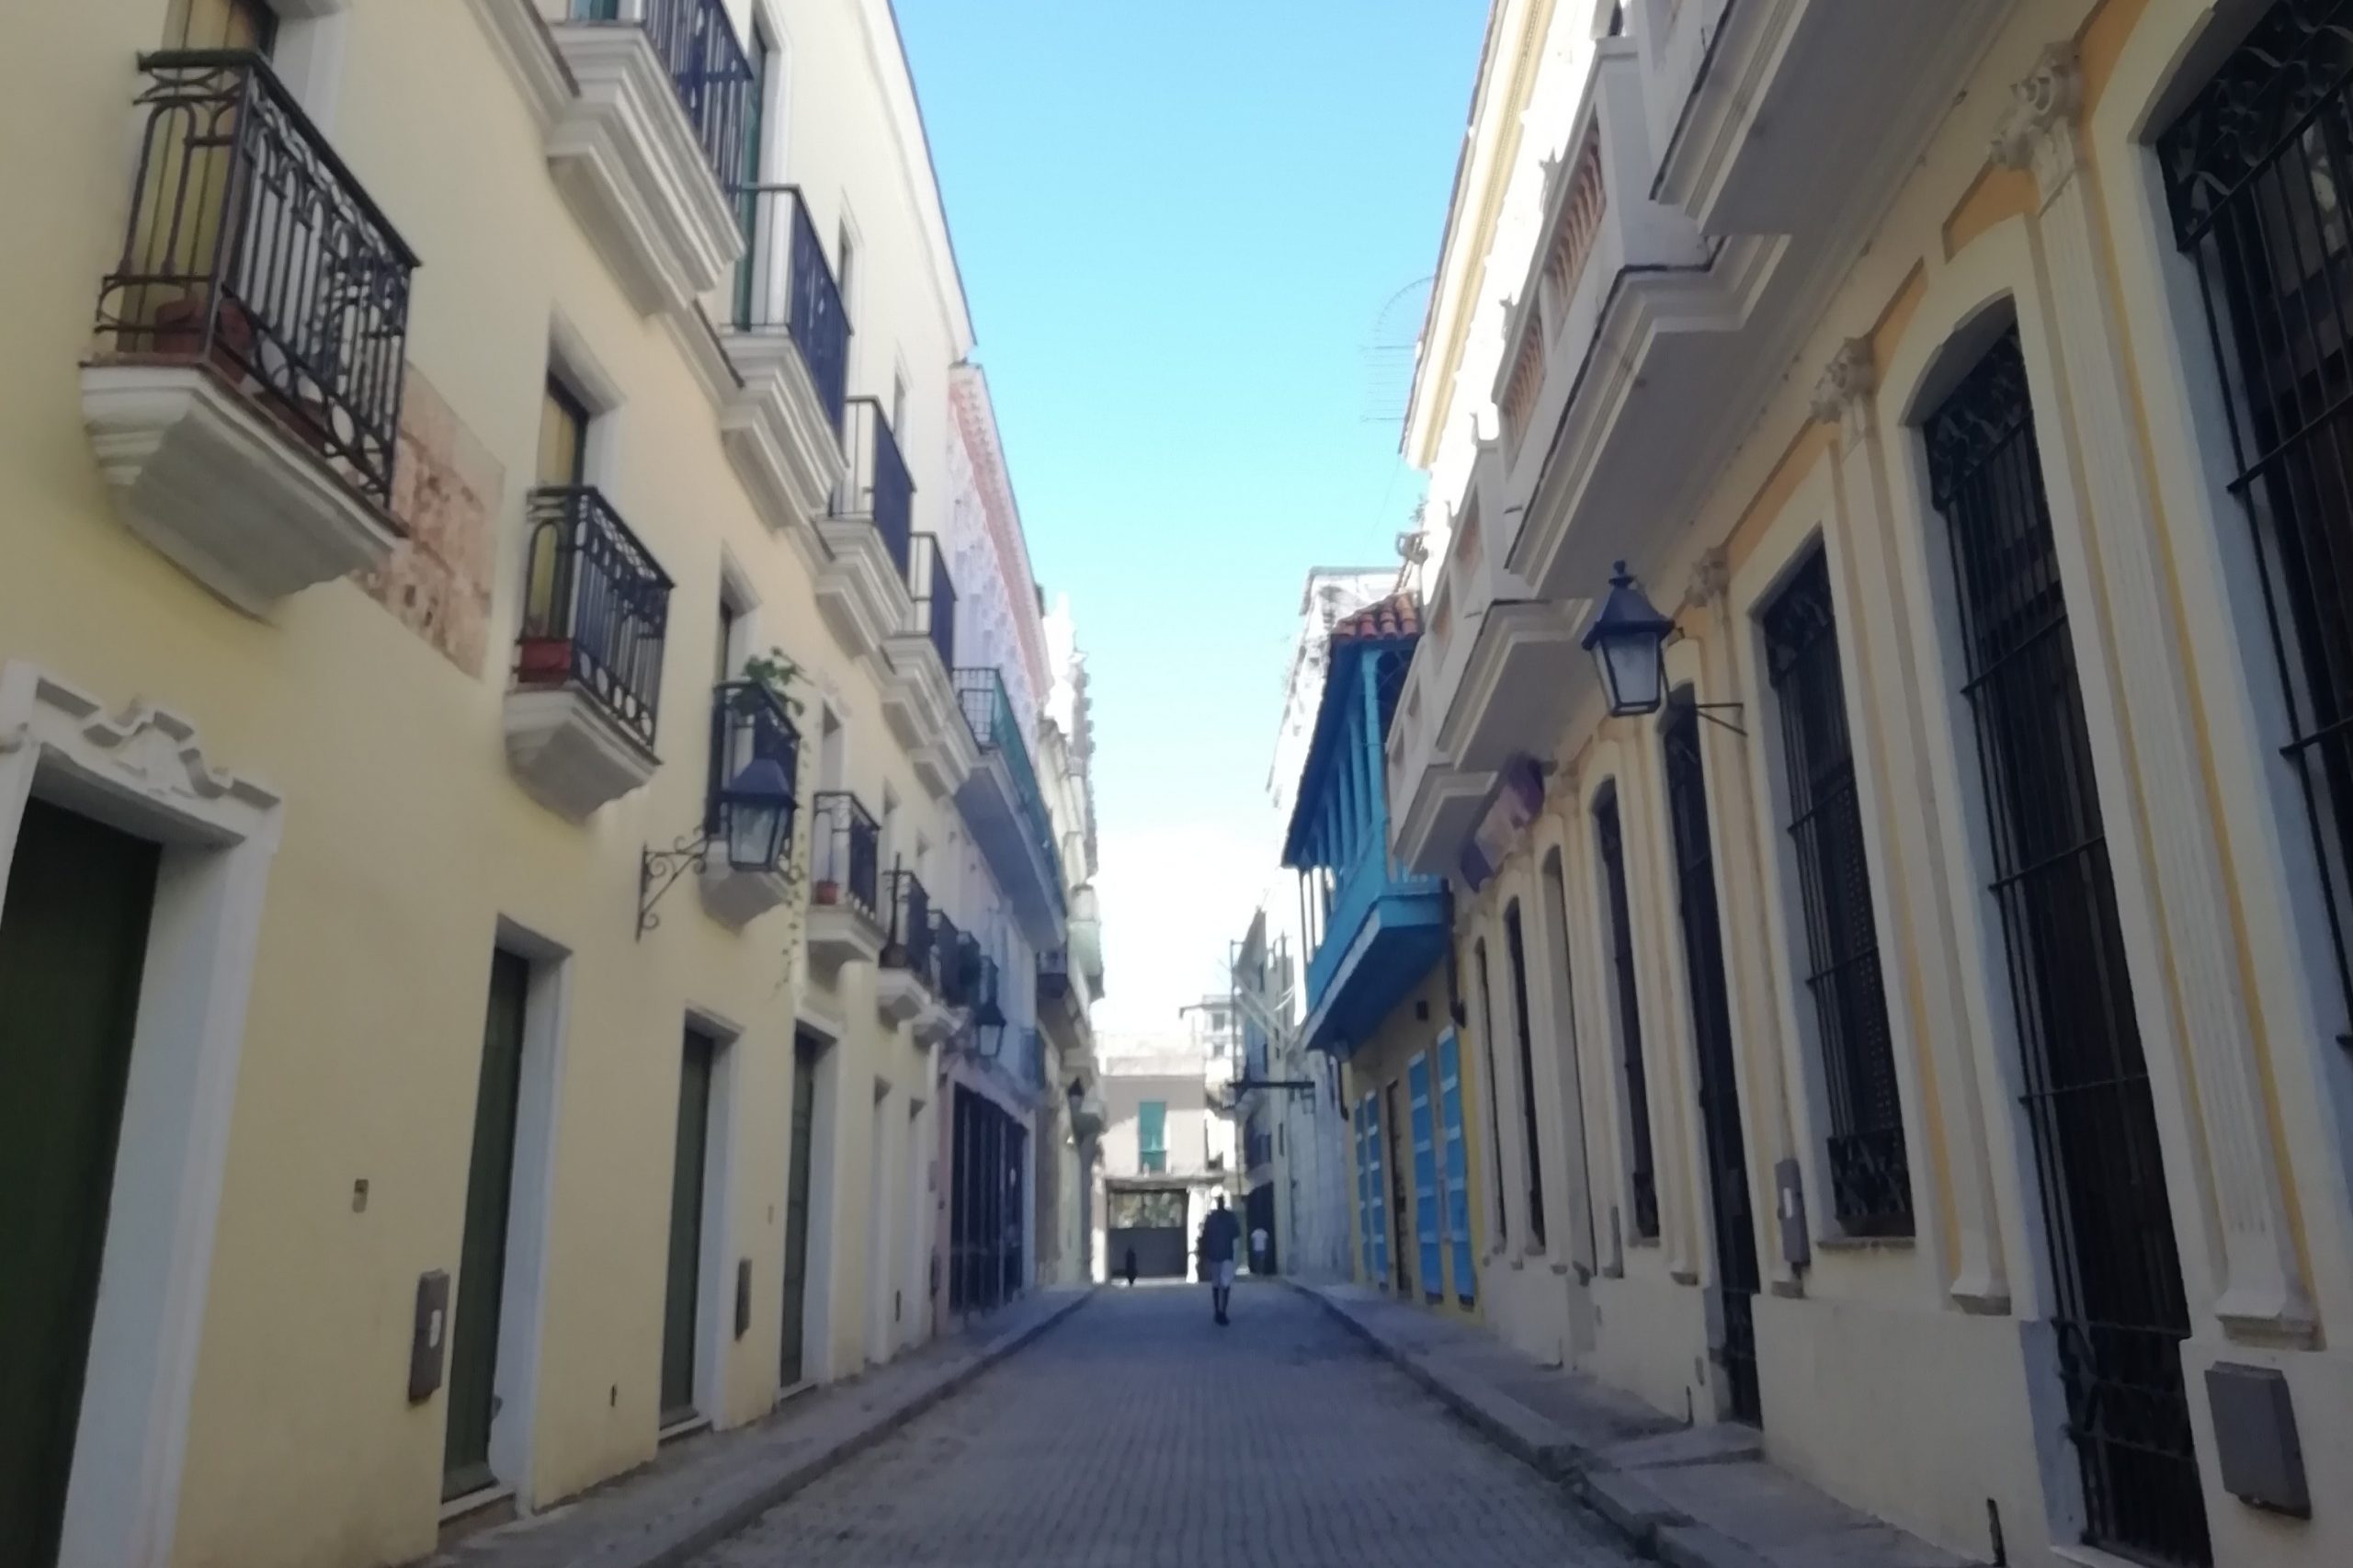 ¿Por qué se llama calle Muralla? (Calles de La Habana)